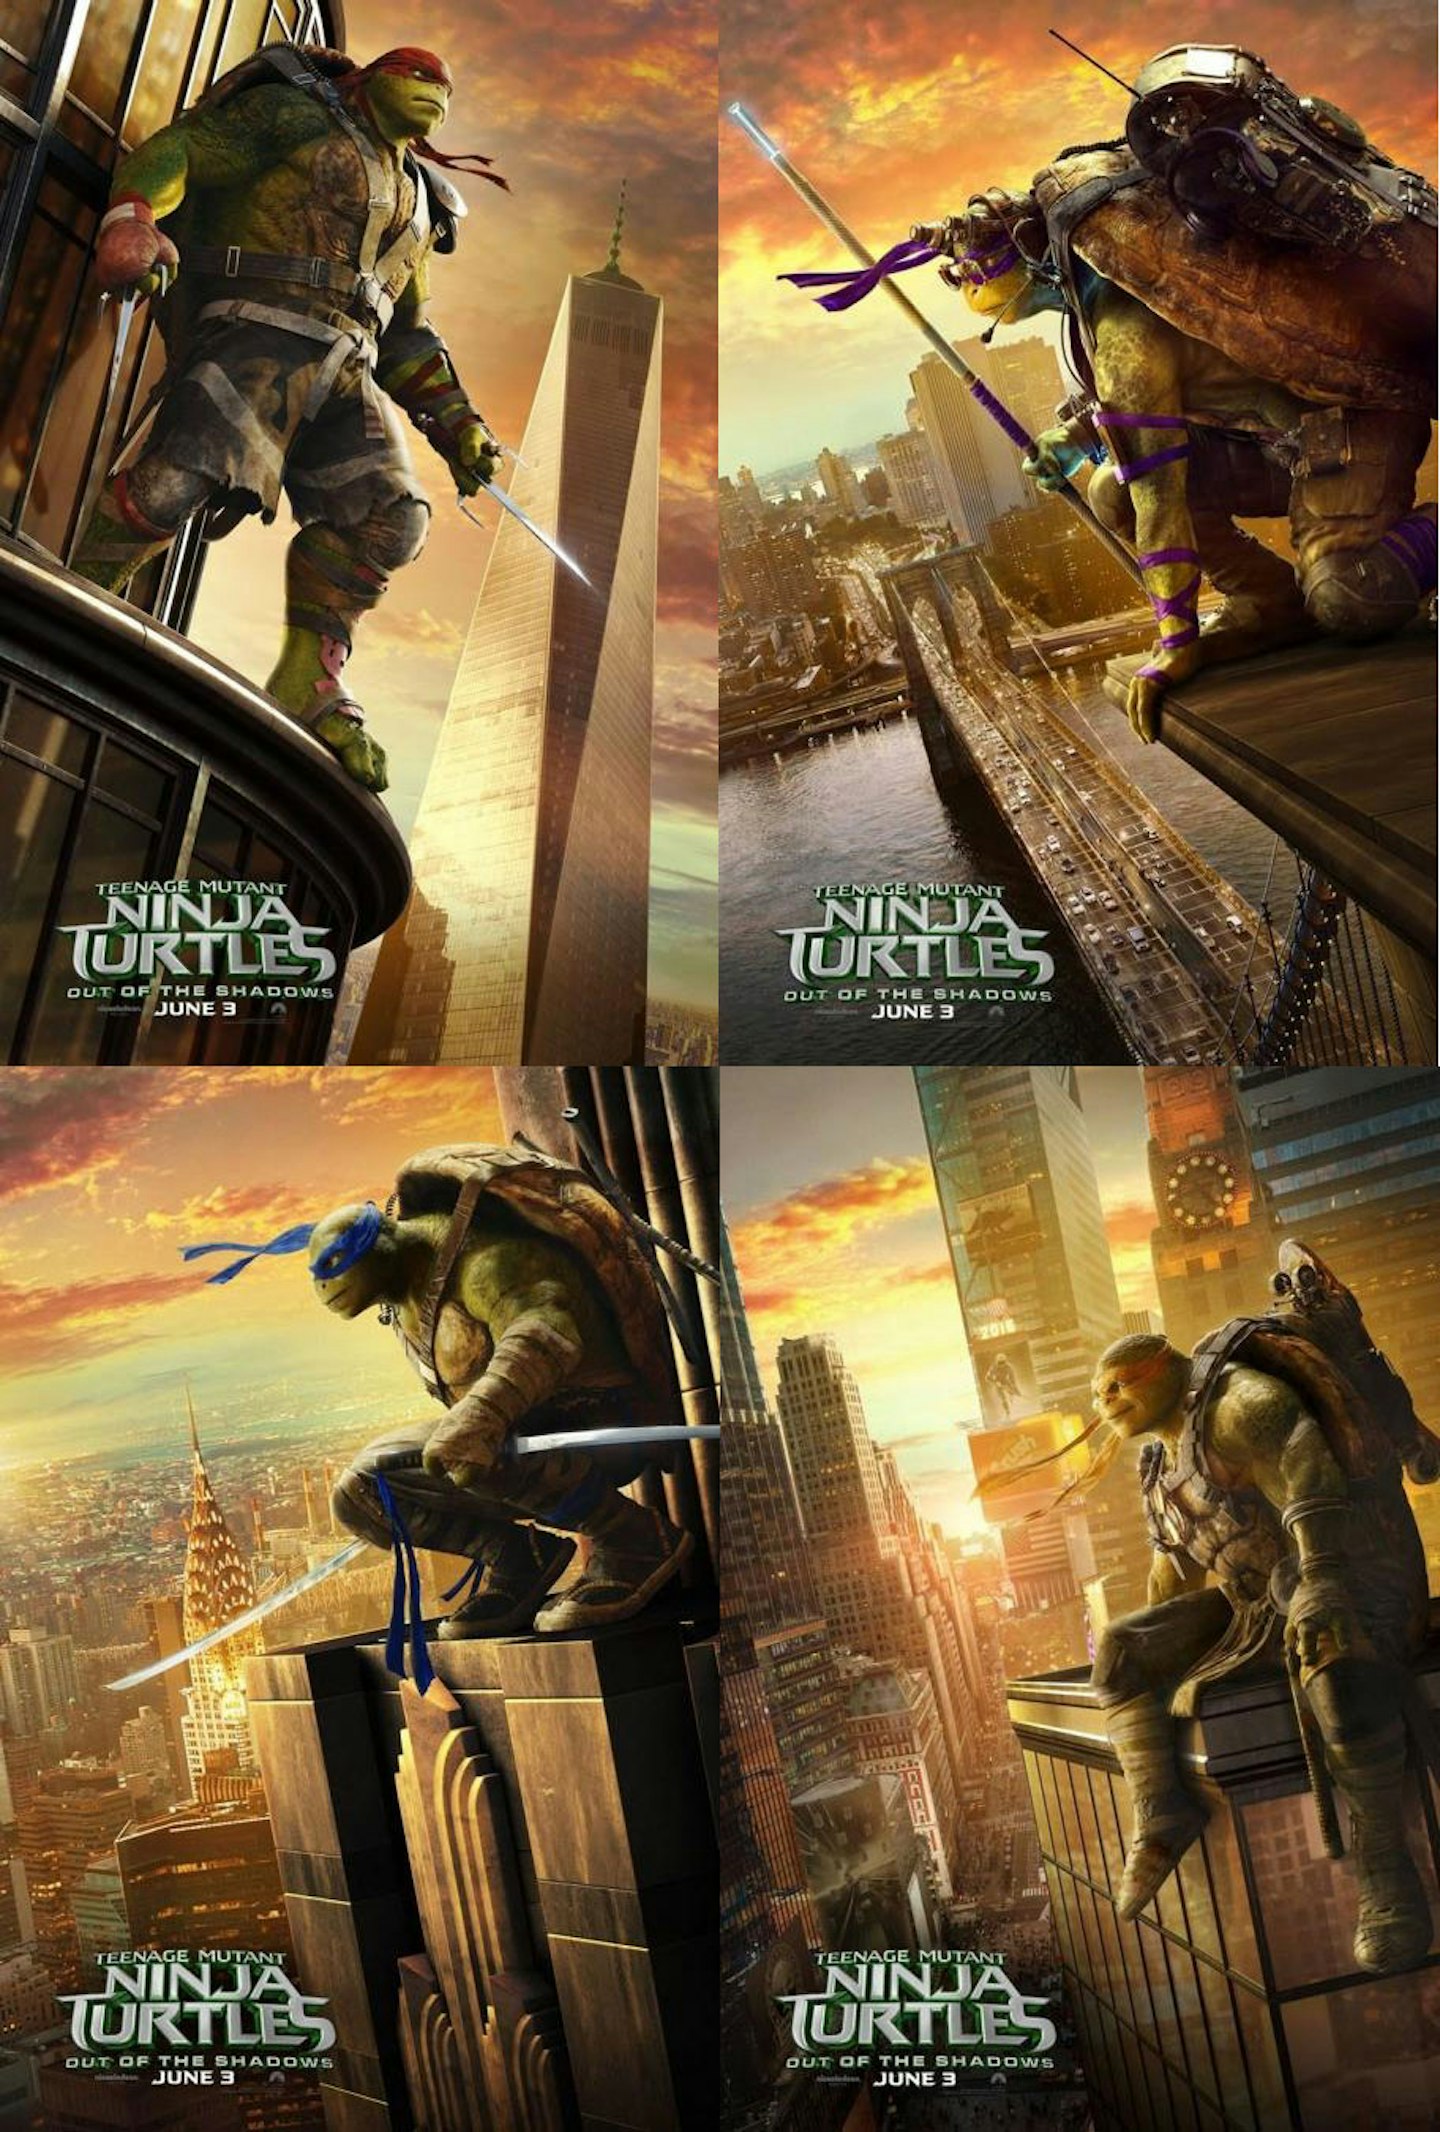 Teenage Mutant Ninja Turtles 2 posters